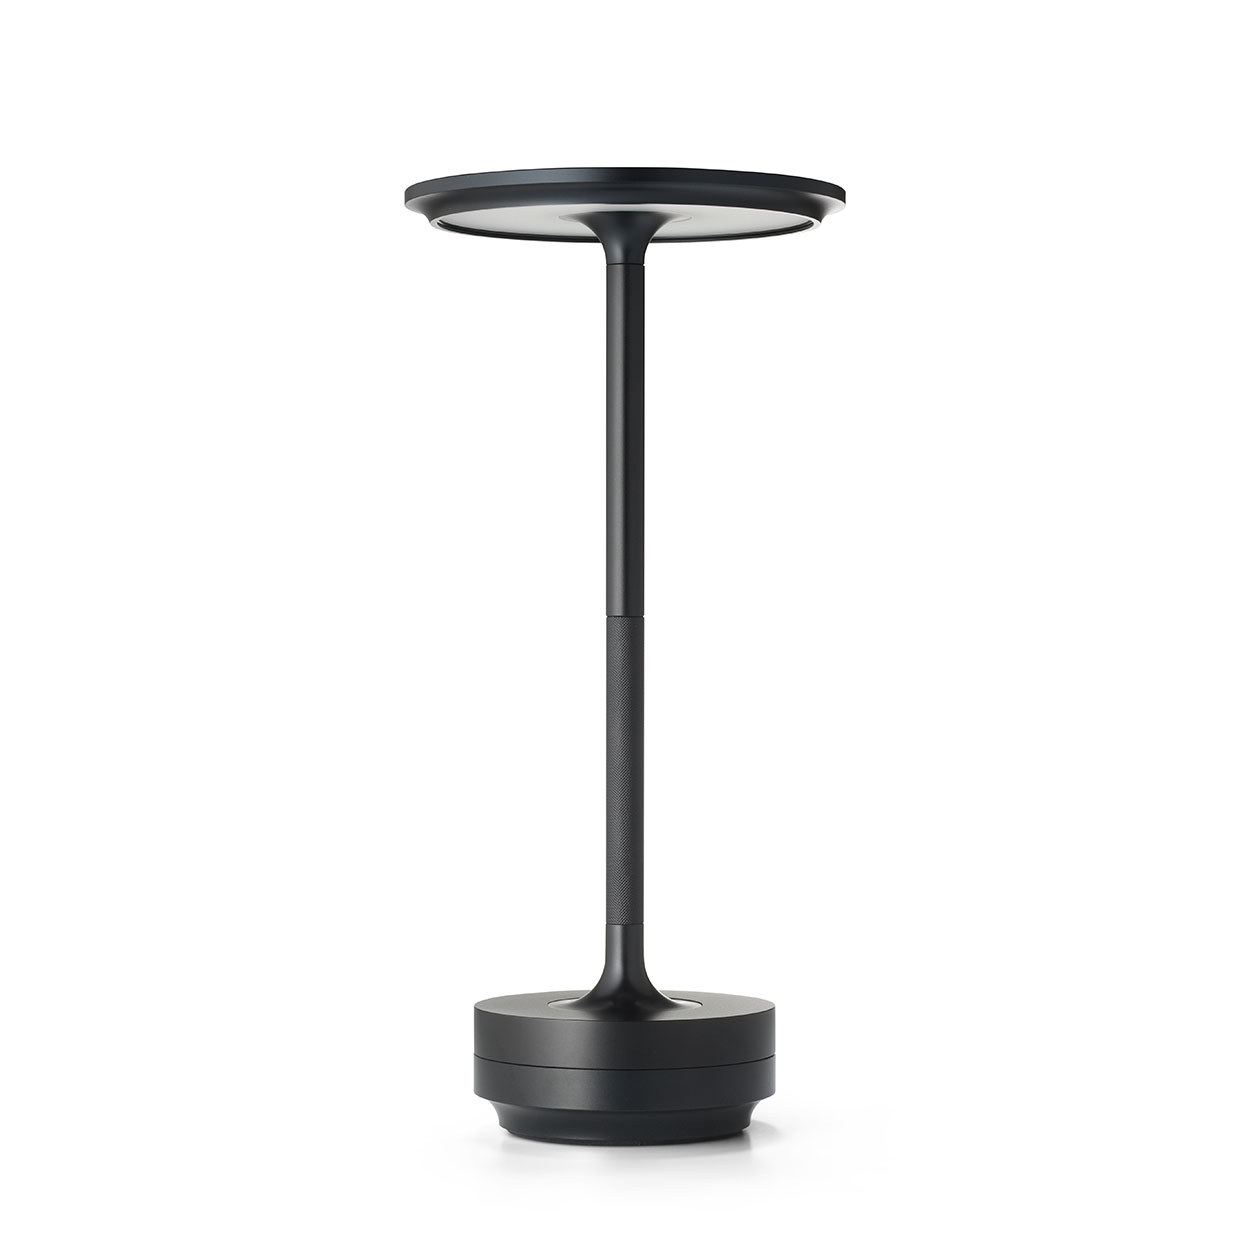 TURN bordslampa portabel, svart aluminium